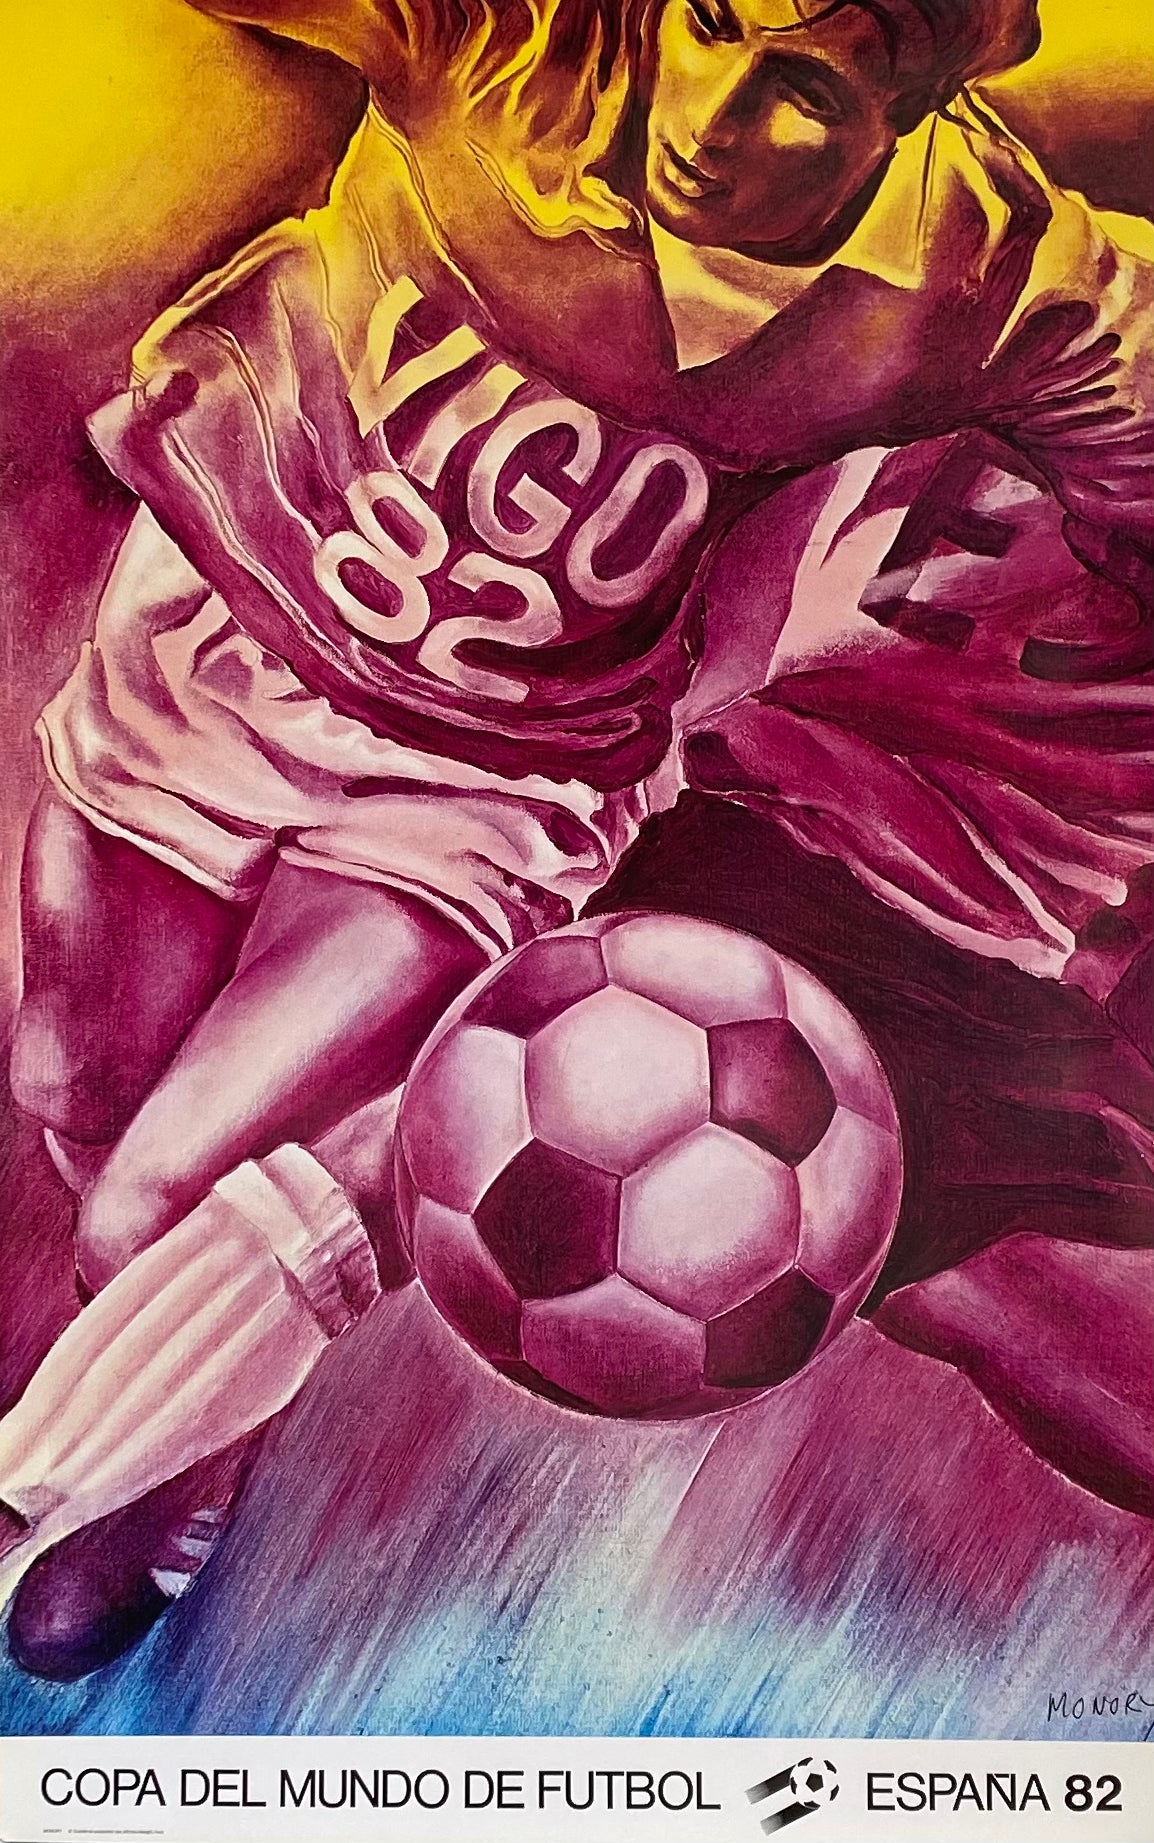 Affiche Coupe du monde football Espagne Par Jacques Monory, 1982 "Cupa del mundo de futbol"